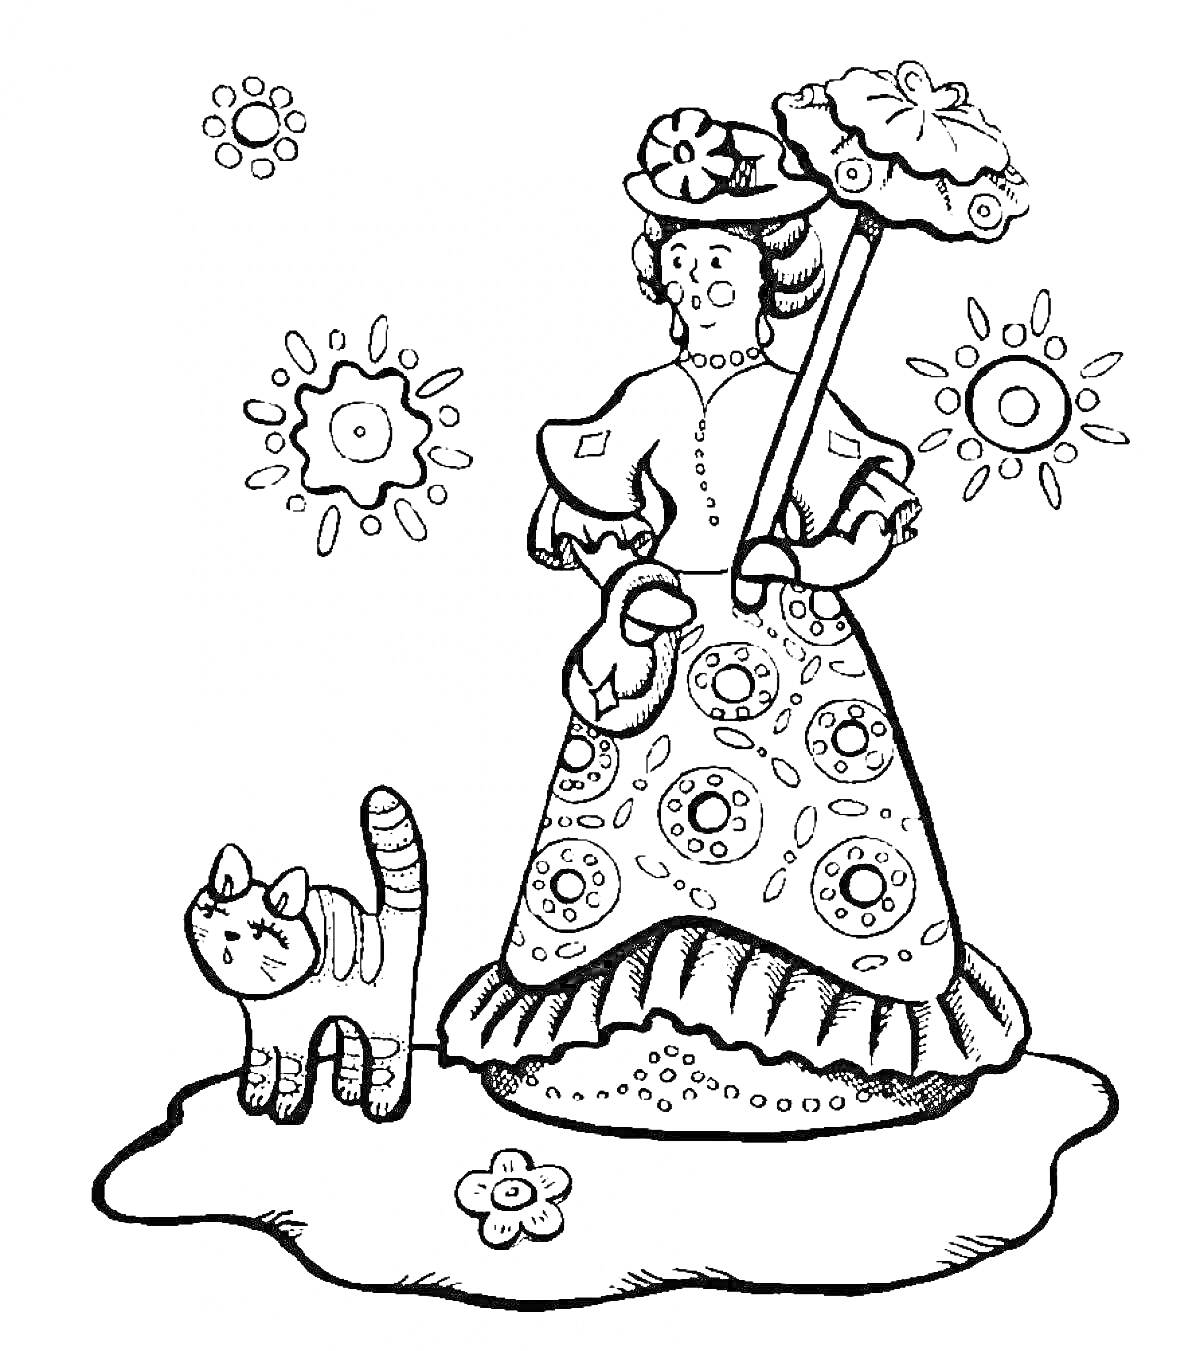 Раскраска Дымковская барышня с цветочным узором, держащая зонт и кот рядом